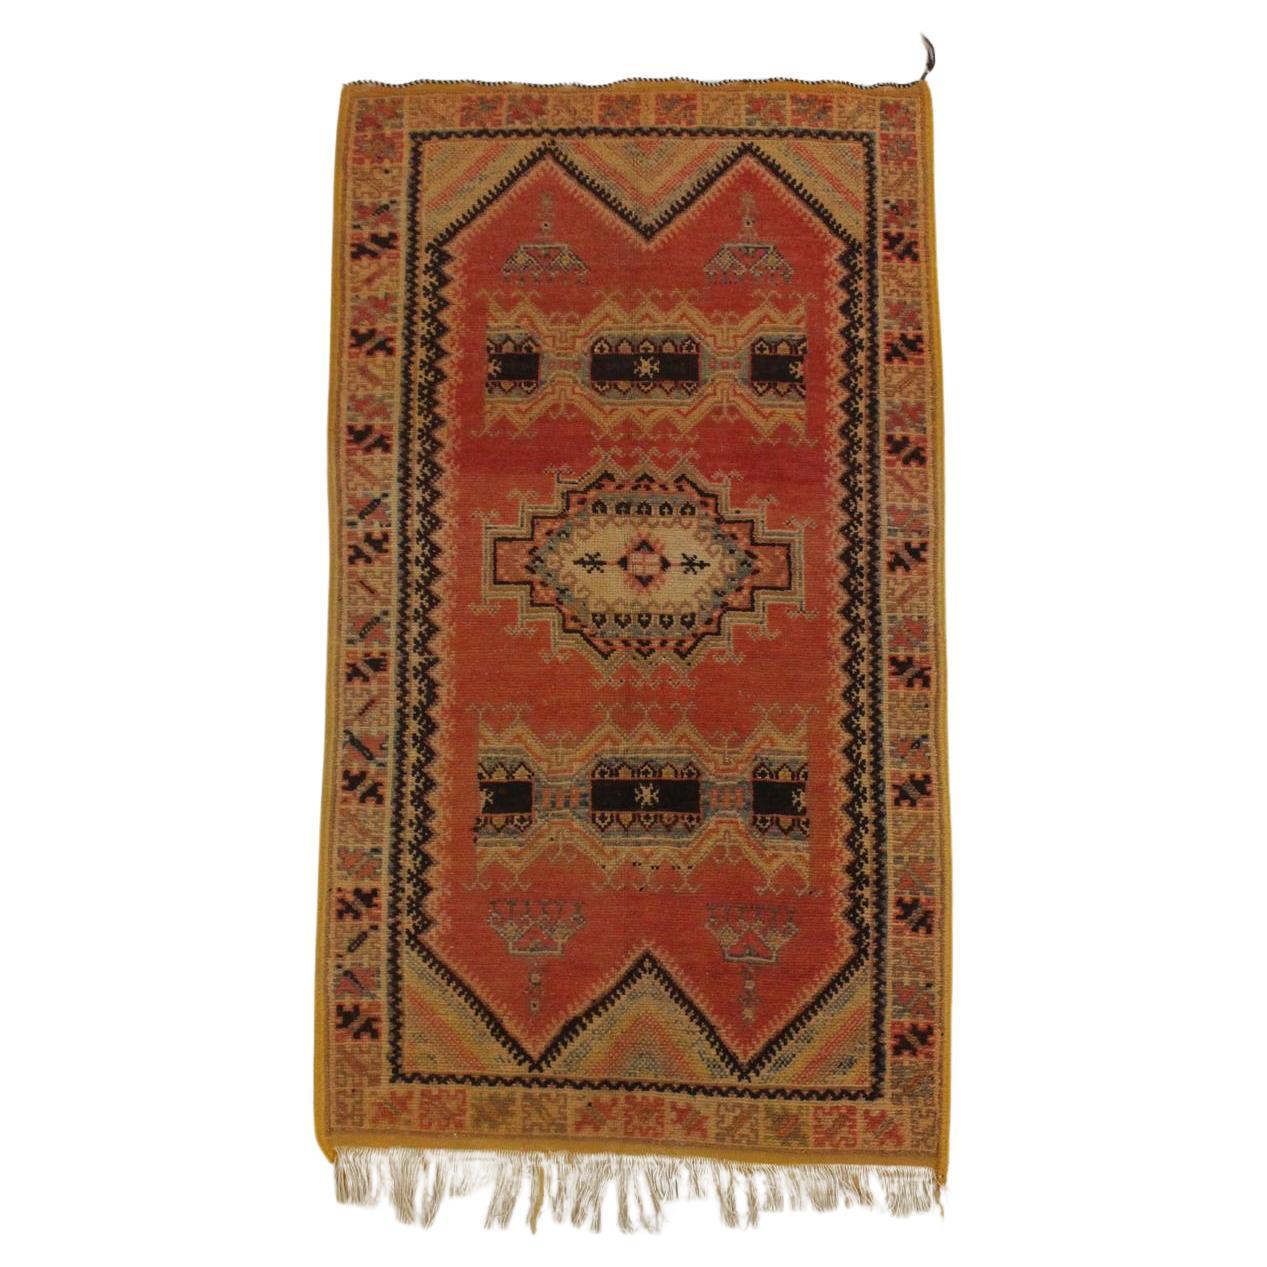 Ce joli tapis vintage a été entièrement réalisé à la main par une femme tisserande de la tribu Tribe Rugs, dans le sud du Maroc, en utilisant toujours les techniques traditionnelles. Sa petite taille en fait un tapis polyvalent parfait que vous